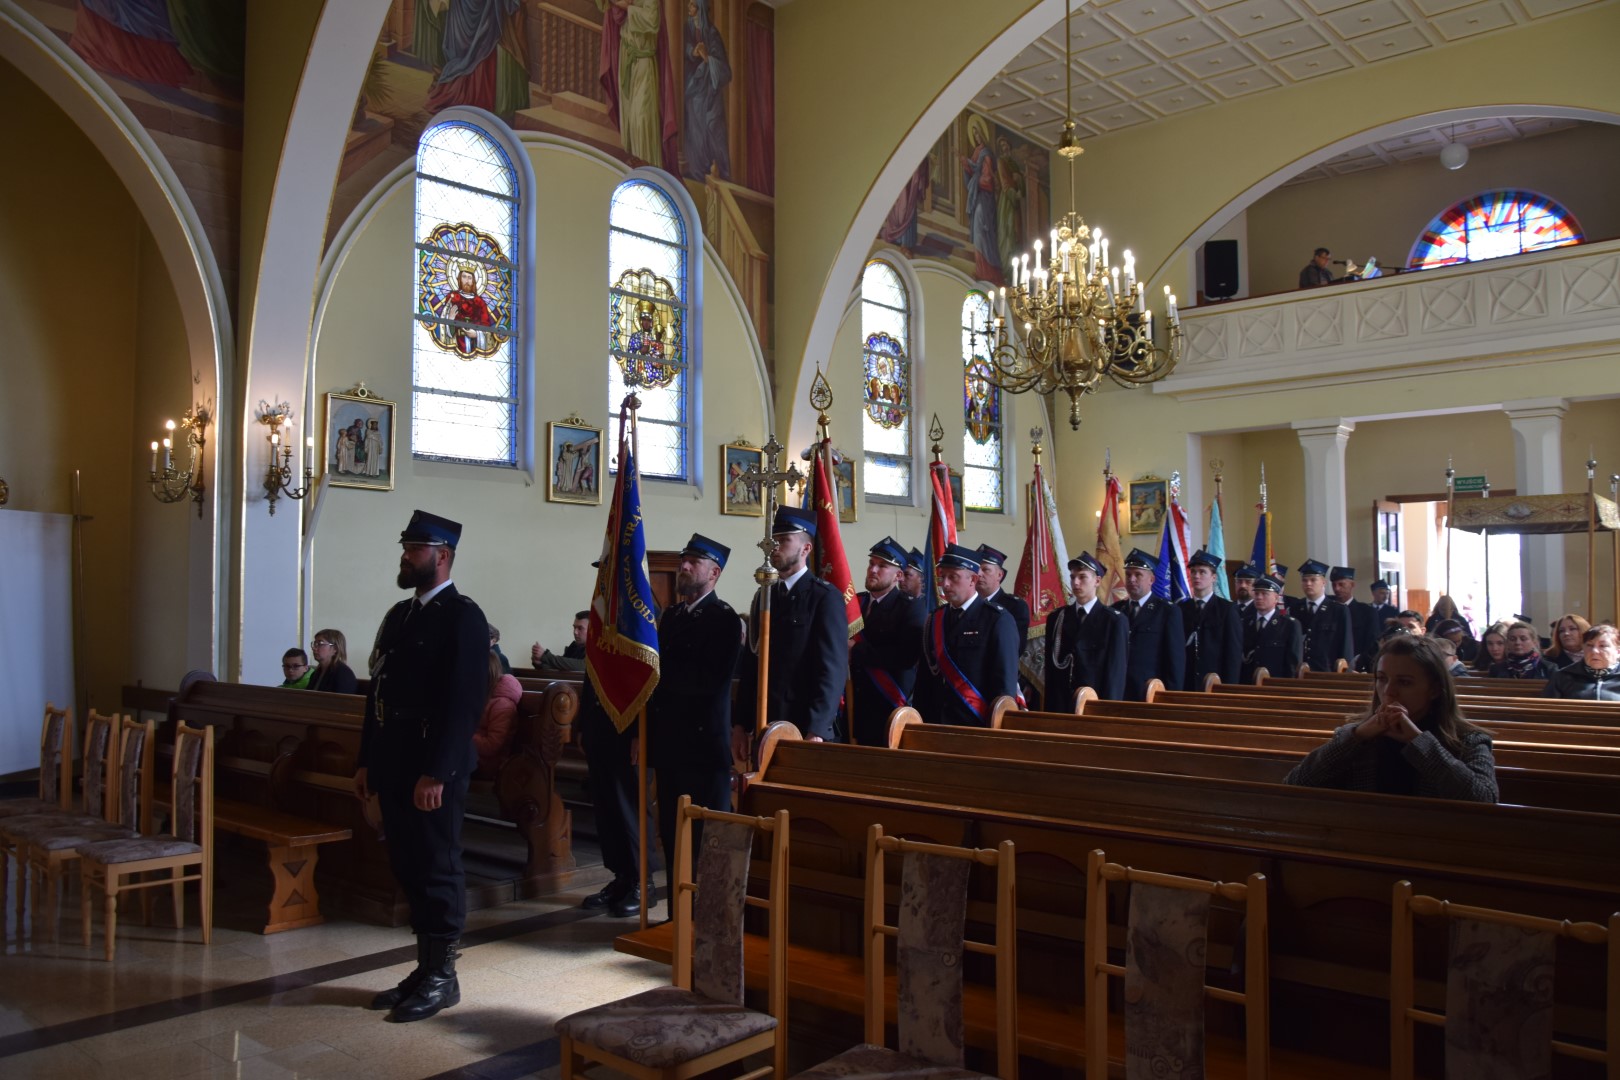 zdjęcie przedstawia poczet sztandarowy jednostek OSP z terenu gminy Wietrzychowice oraz uczestników uroczystej mszy świętej wewnątrz kościoła